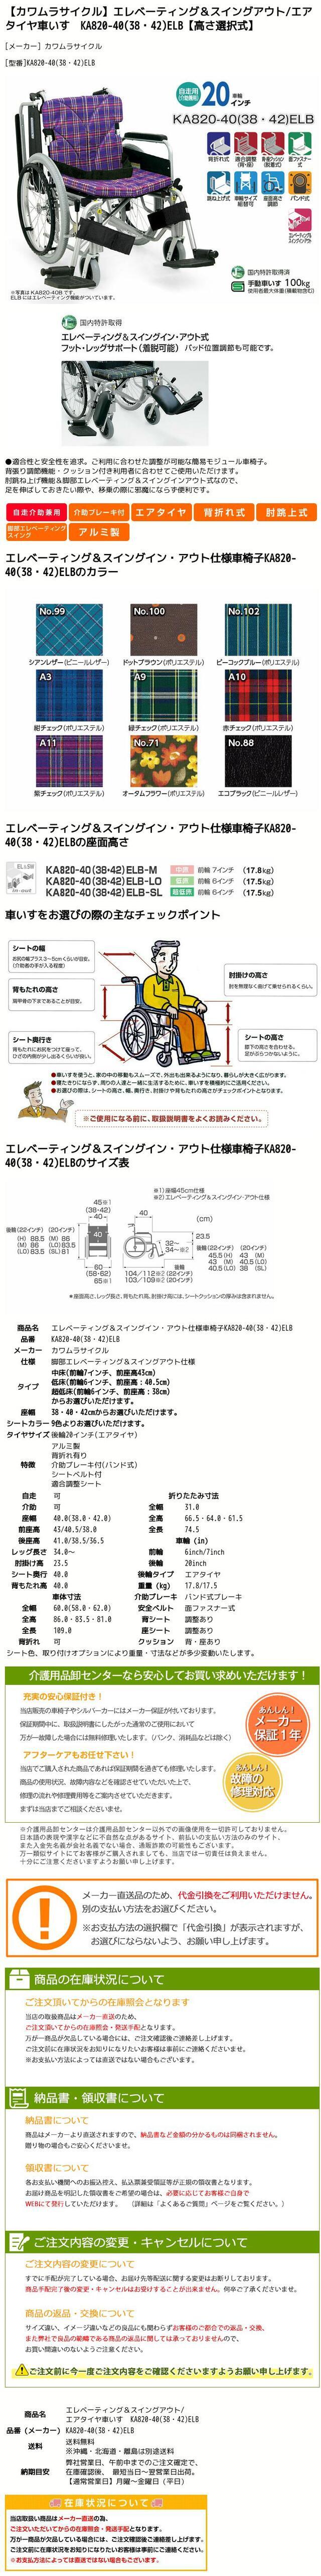 最新人気 車椅子 カワムラサイクル KA820-40 38 42 ELB 介護用品 自走用 smaksangtimur-jkt.sch.id